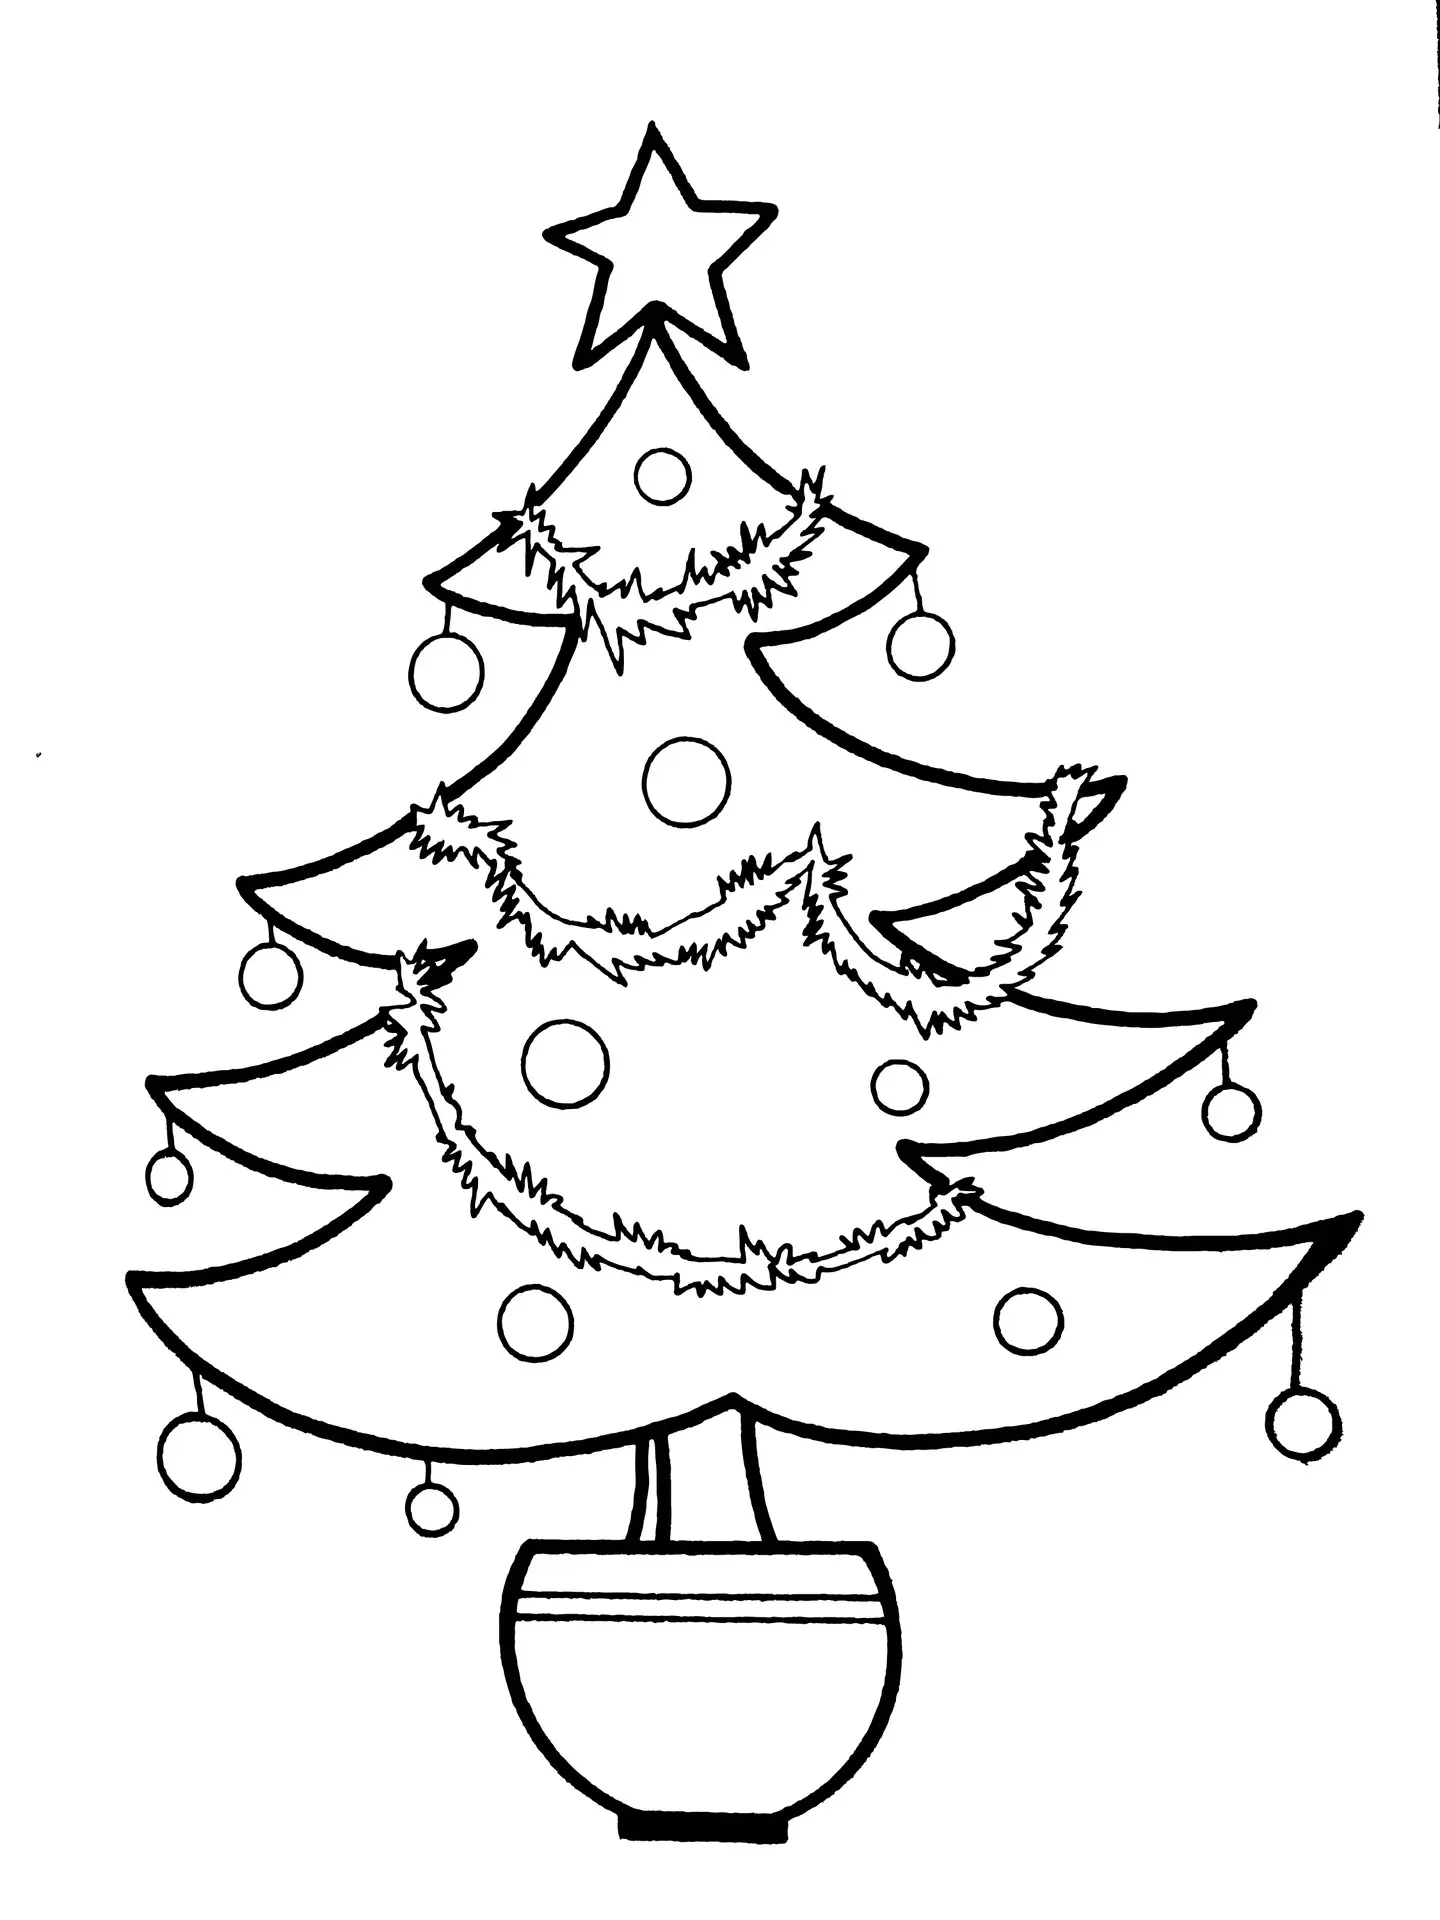 El árbol de navidad Foto: